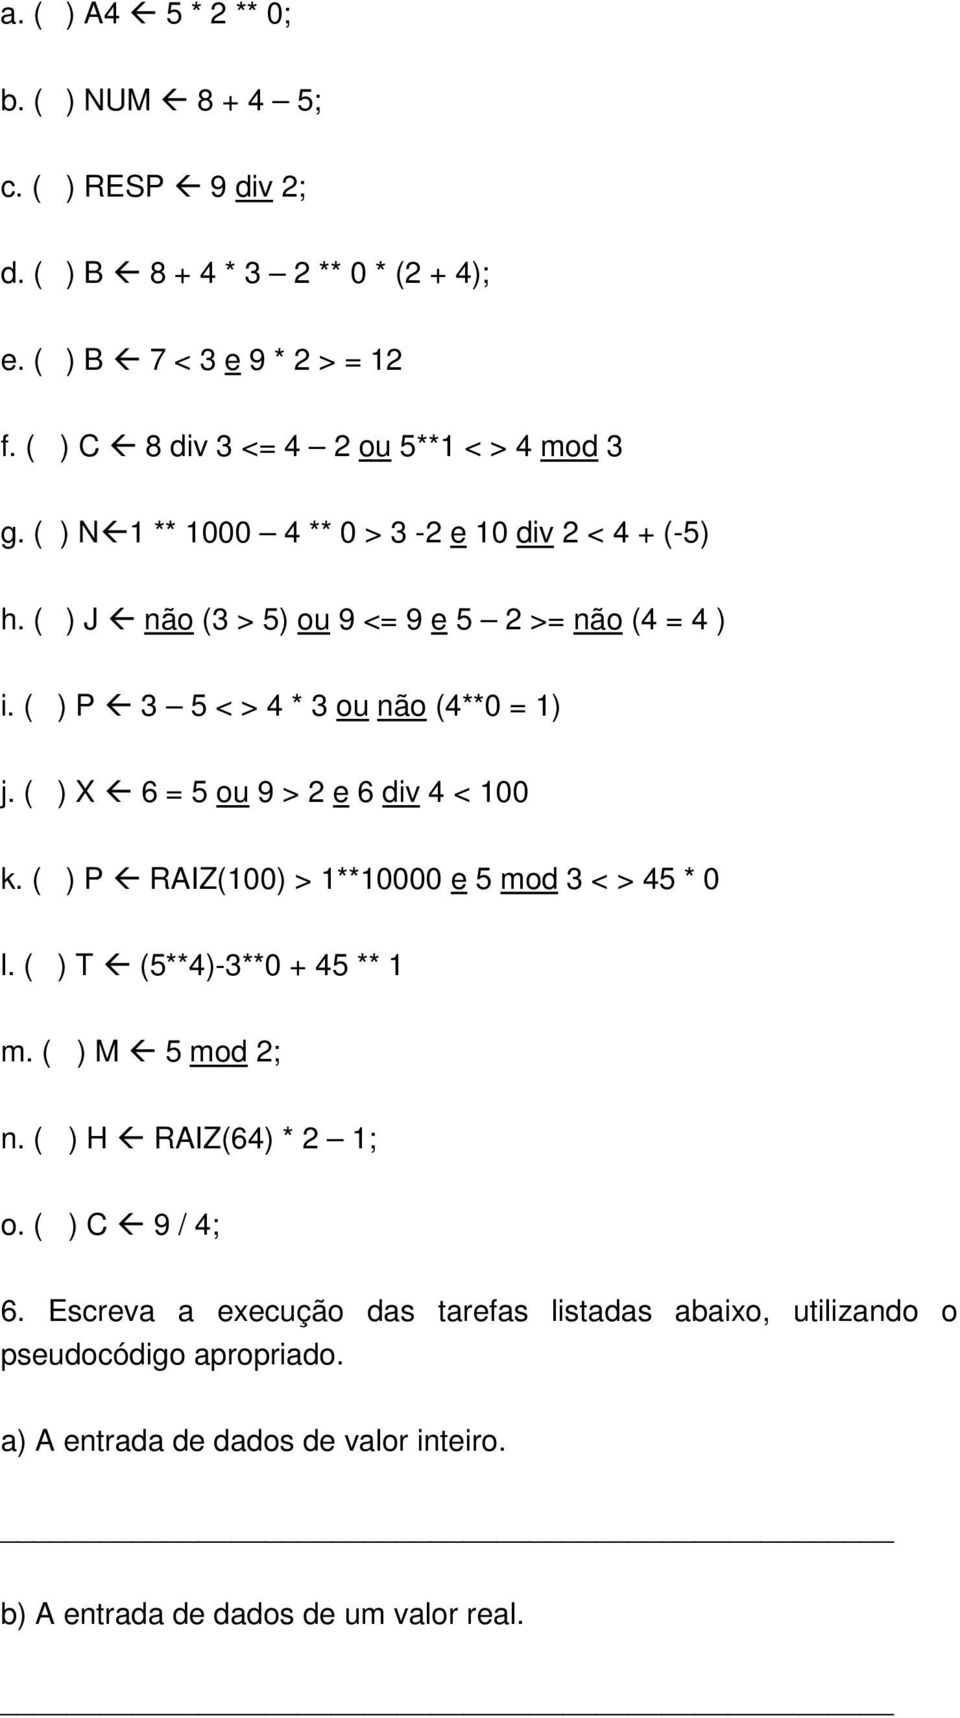 ( ) P 3 5 < > 4 * 3 ou não (4**0 = 1) j. ( ) X 6 = 5 ou 9 > 2 e 6 div 4 < 100 k. ( ) P RAIZ(100) > 1**10000 e 5 mod 3 < > 45 * 0 l. ( ) T (5**4)-3**0 + 45 ** 1 m.